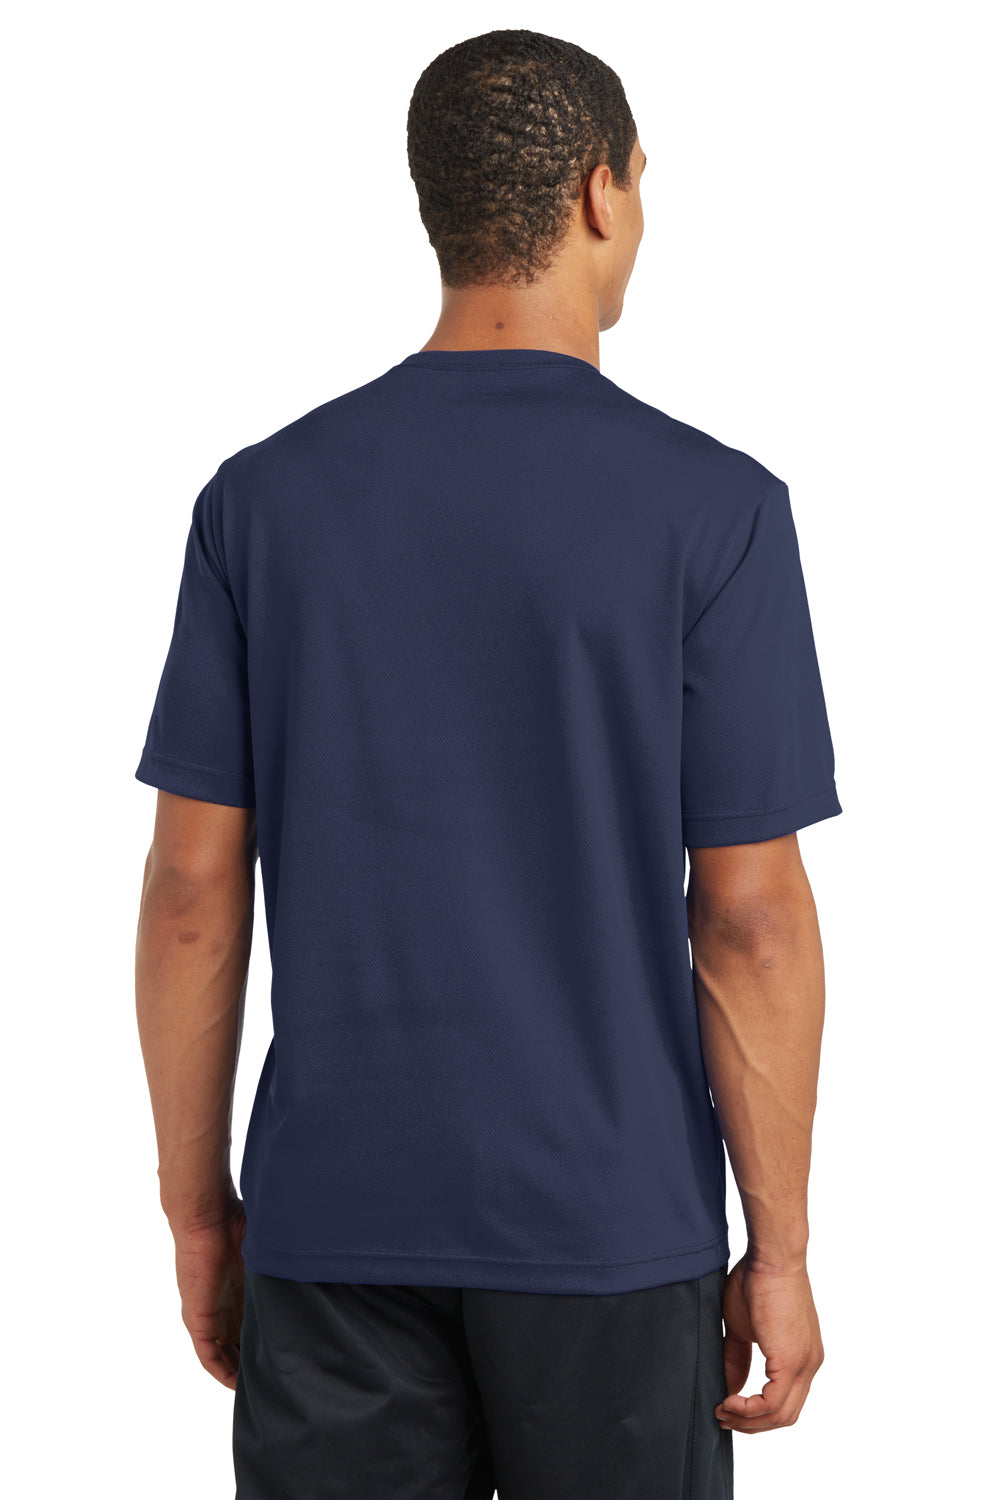 Sport-Tek ST340 Mens RacerMesh Moisture Wicking Short Sleeve Crewneck T-Shirt Navy Blue Back